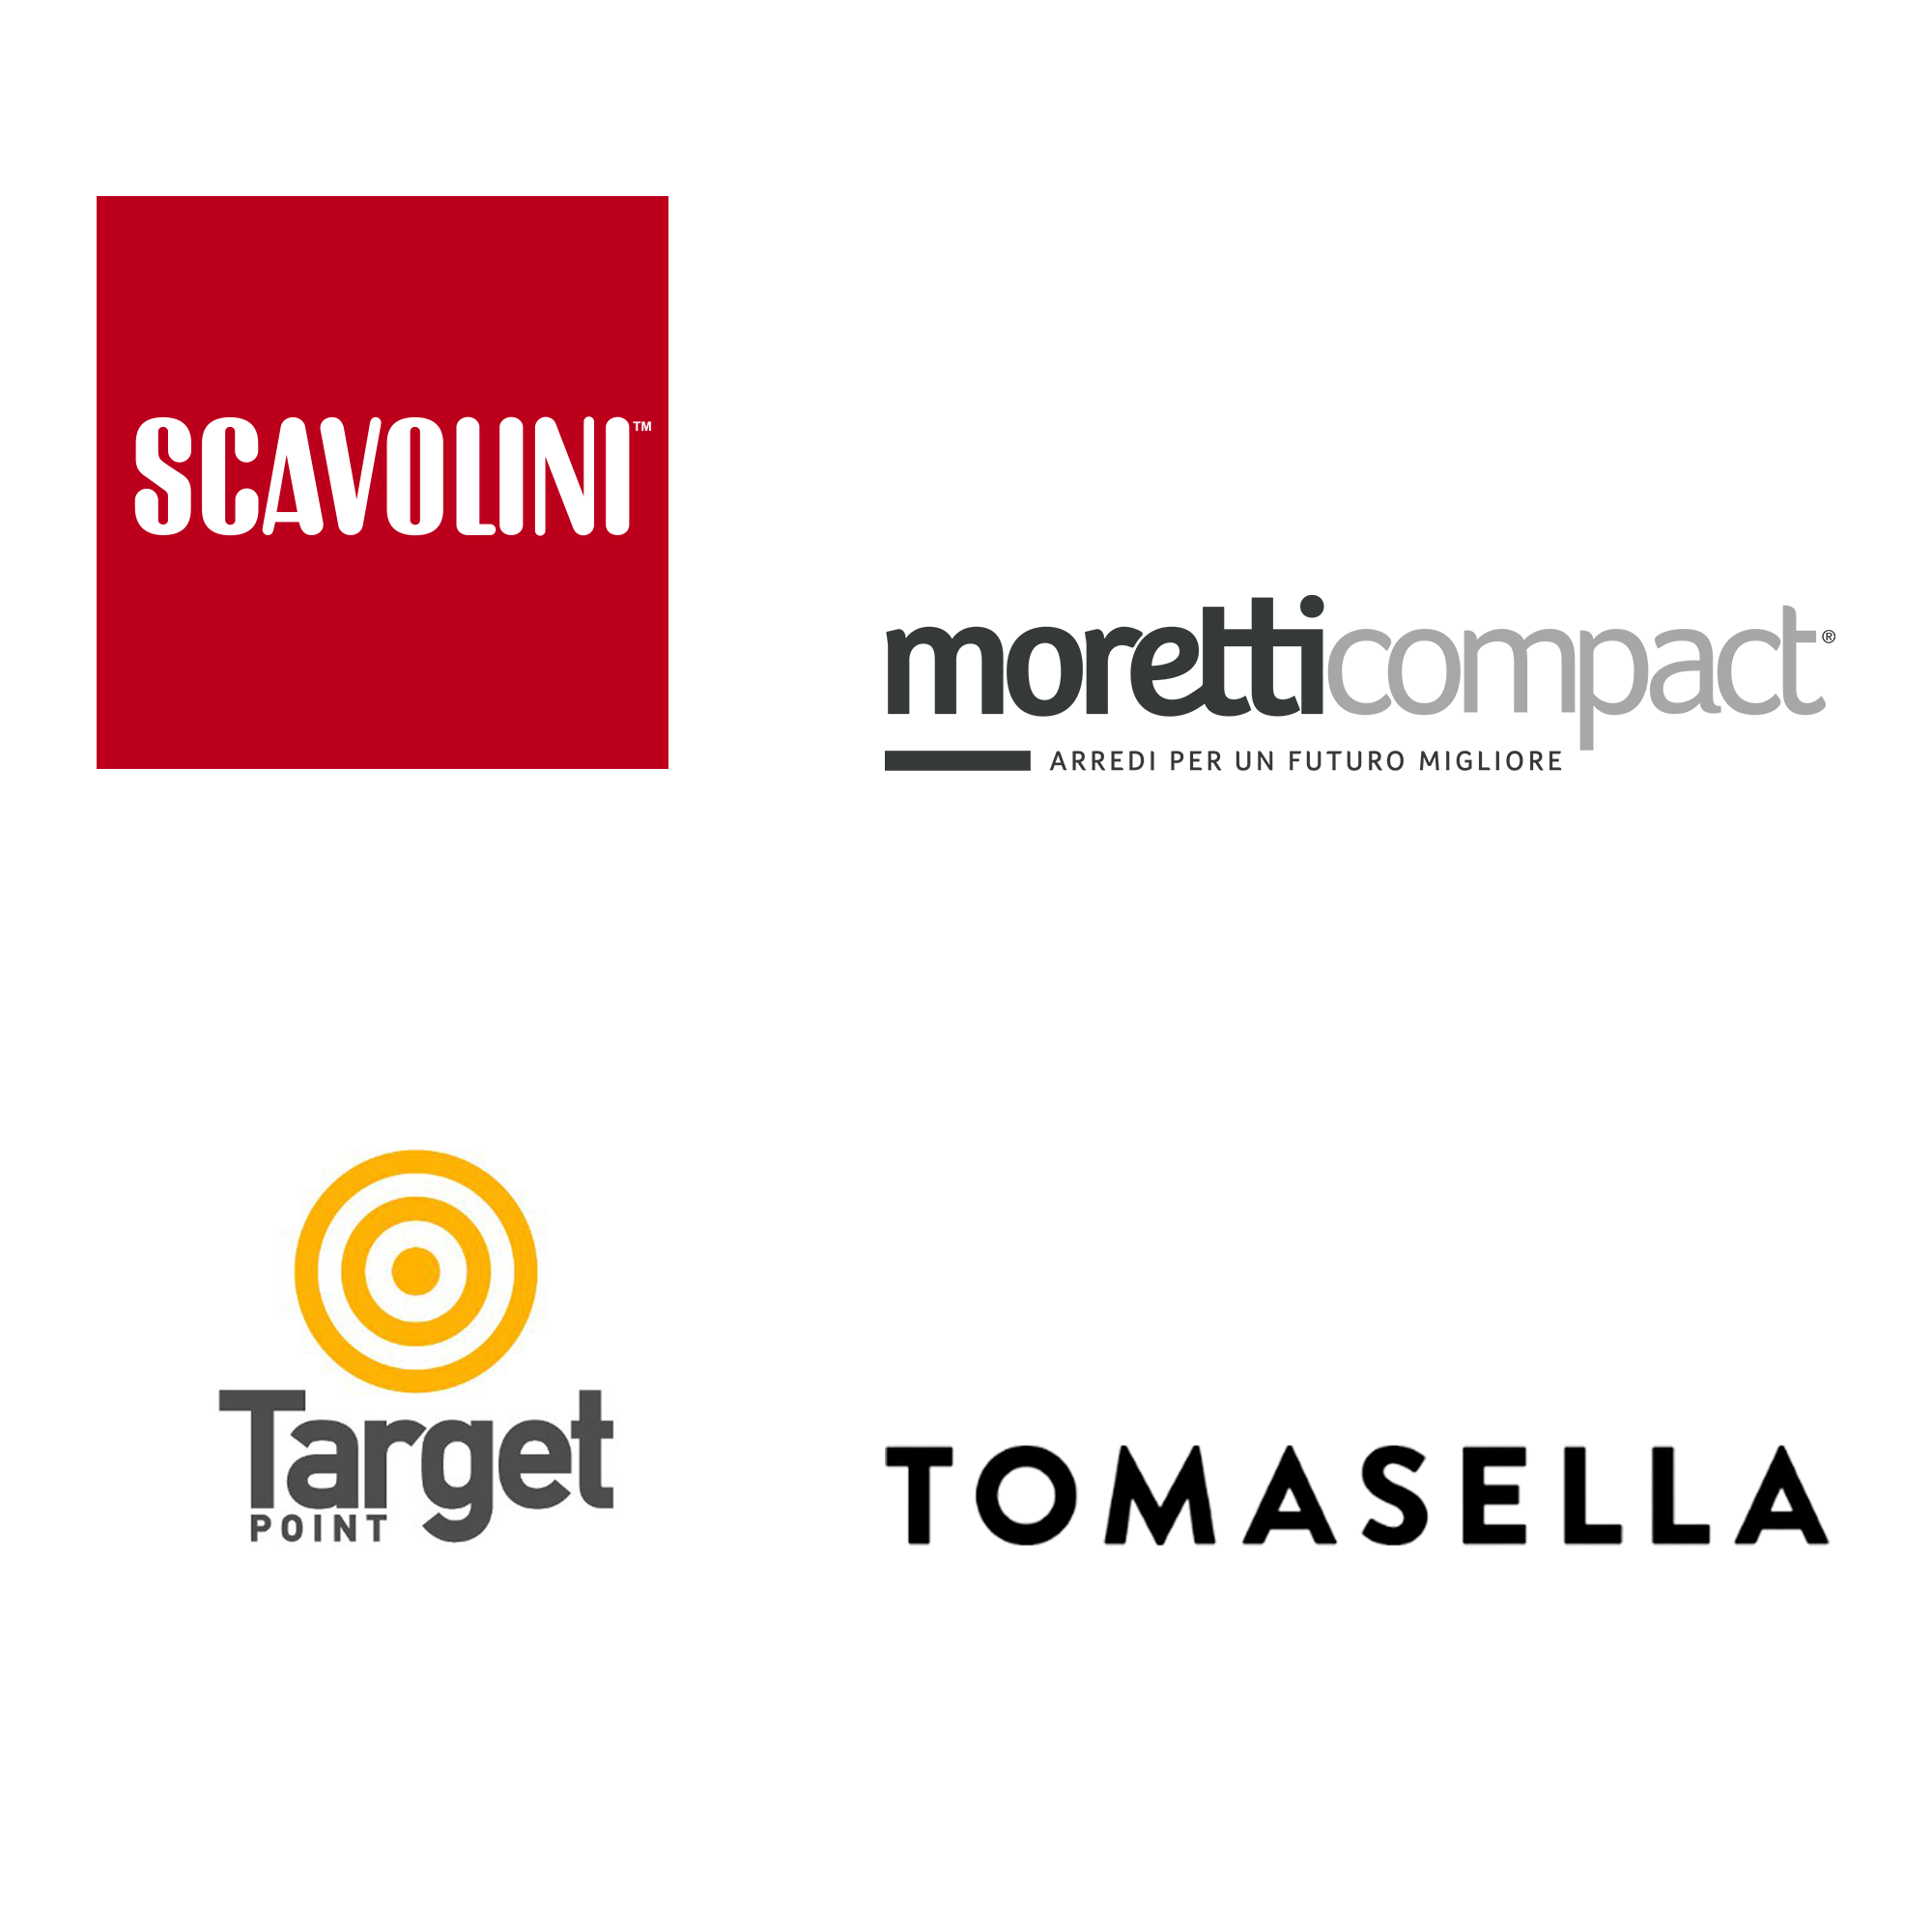 Scavolini, Moretti Compact, Target Point, Tomasella Arredamento per tutti gli spazi e per tutti i budget Marinelli Design Group